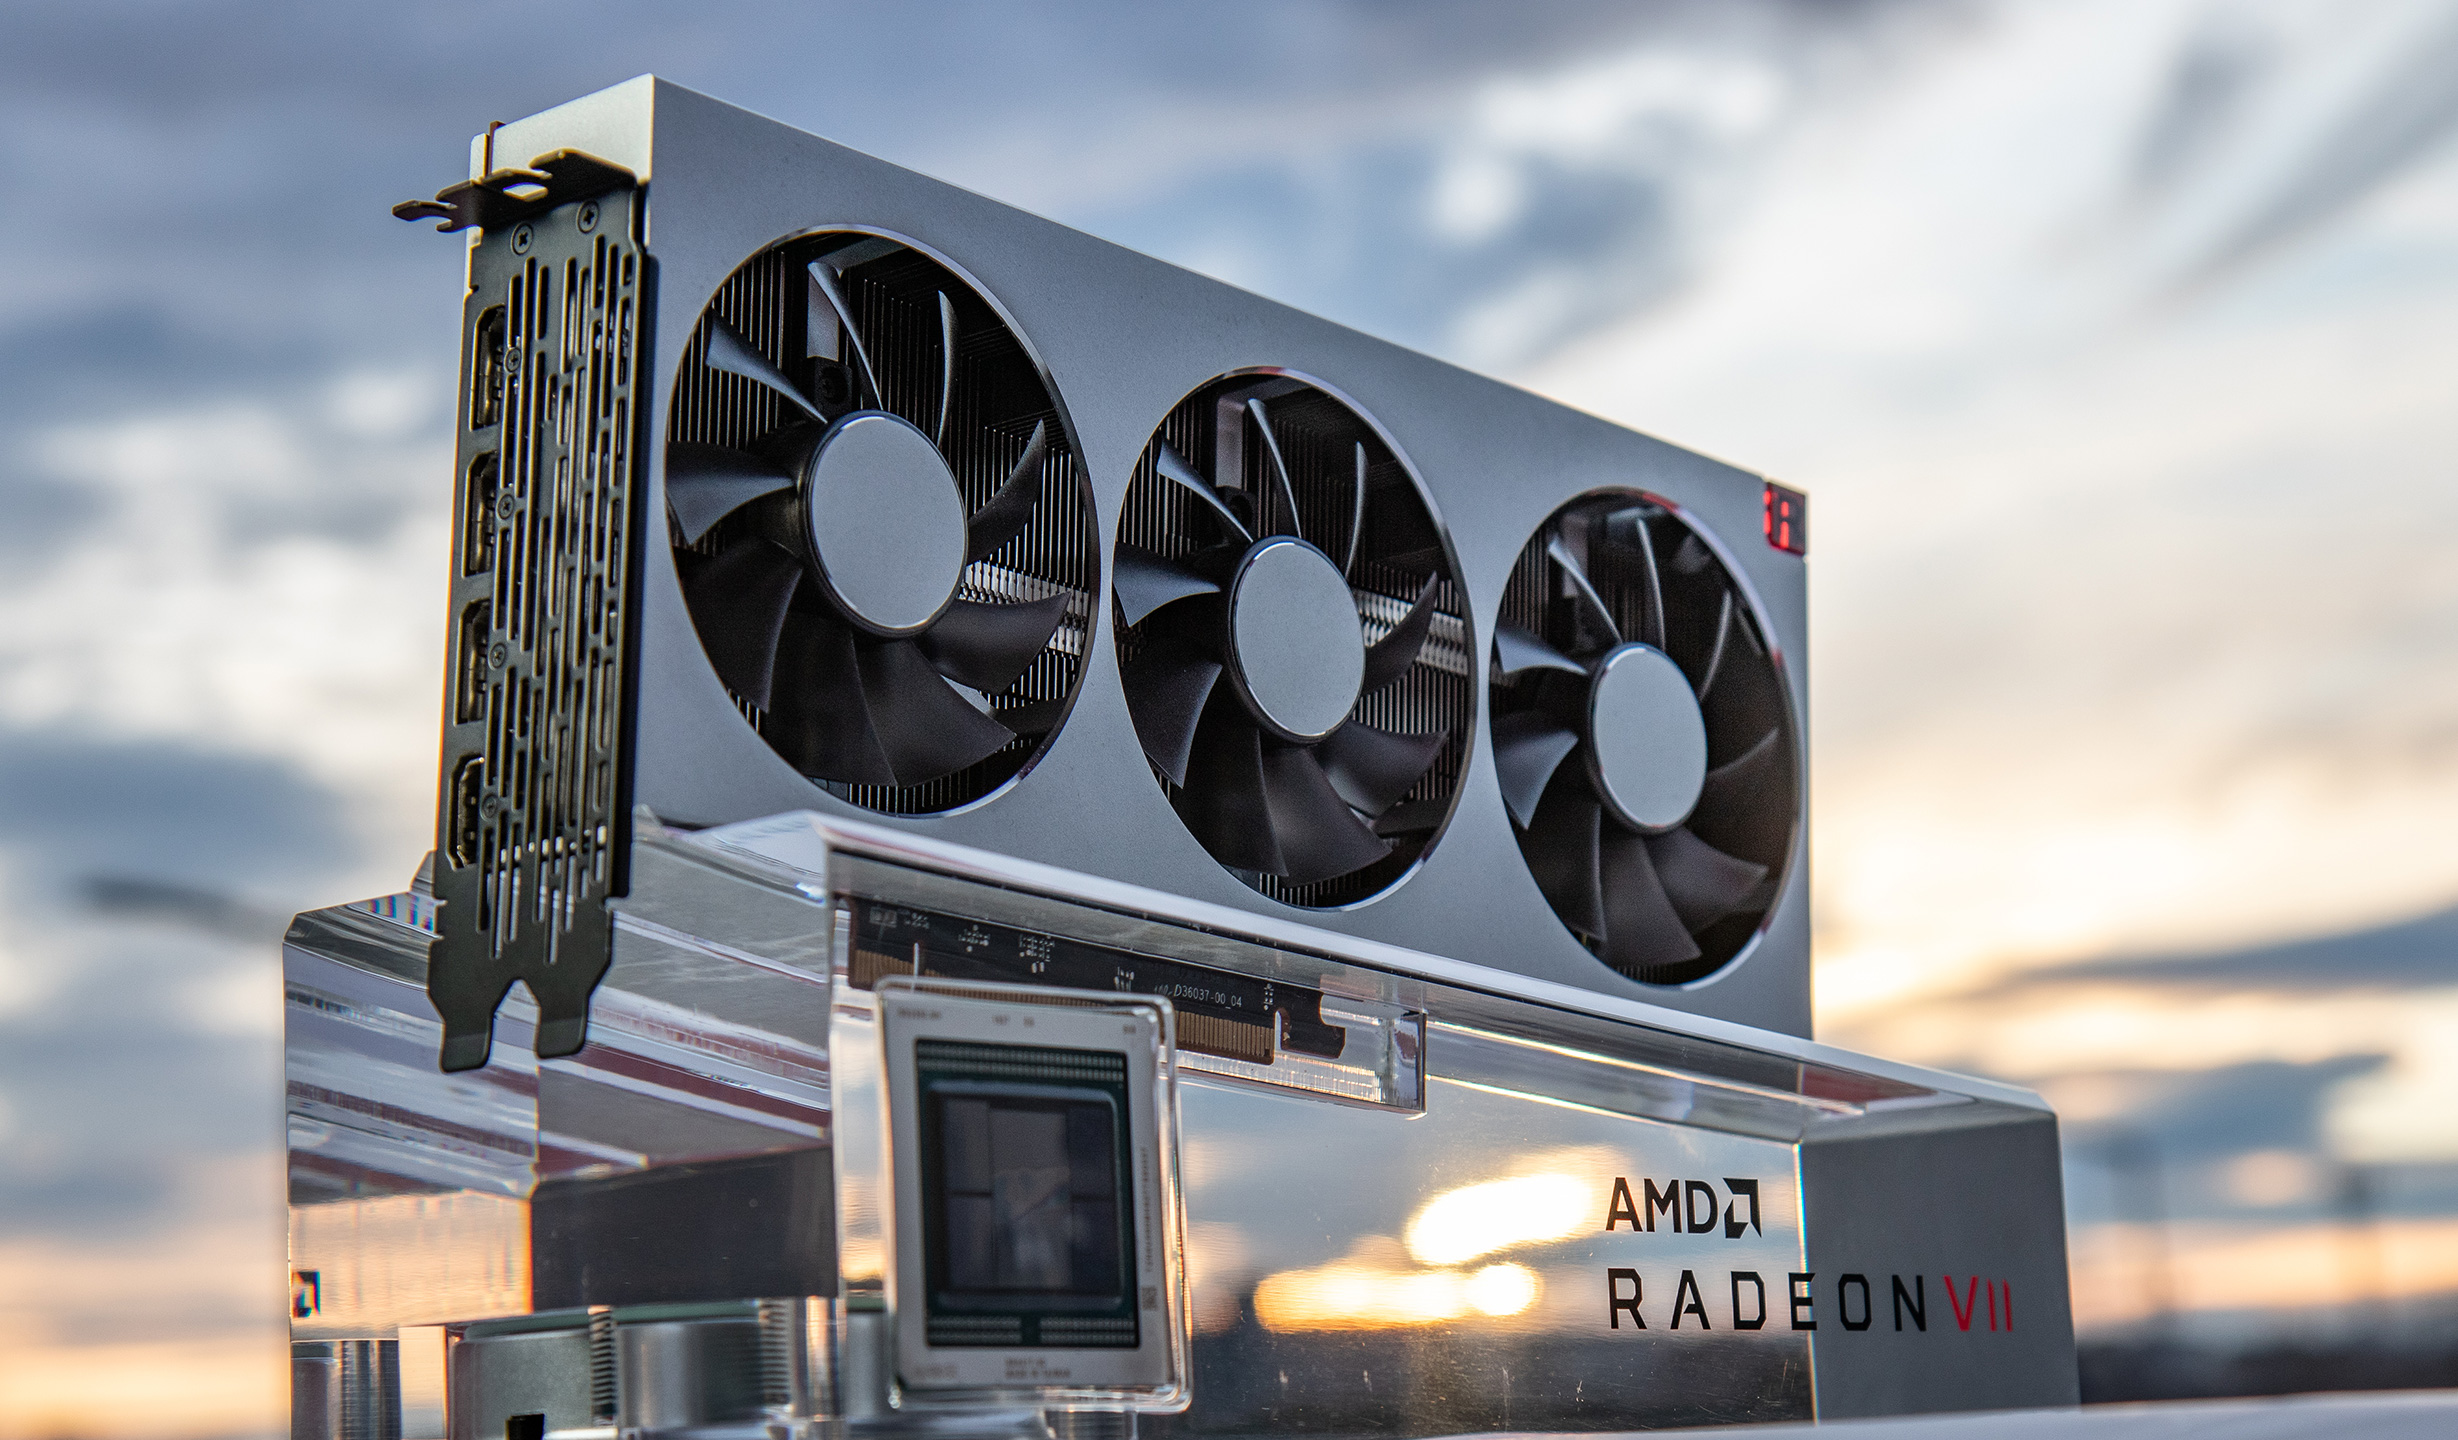 AMD Radeon VII 7